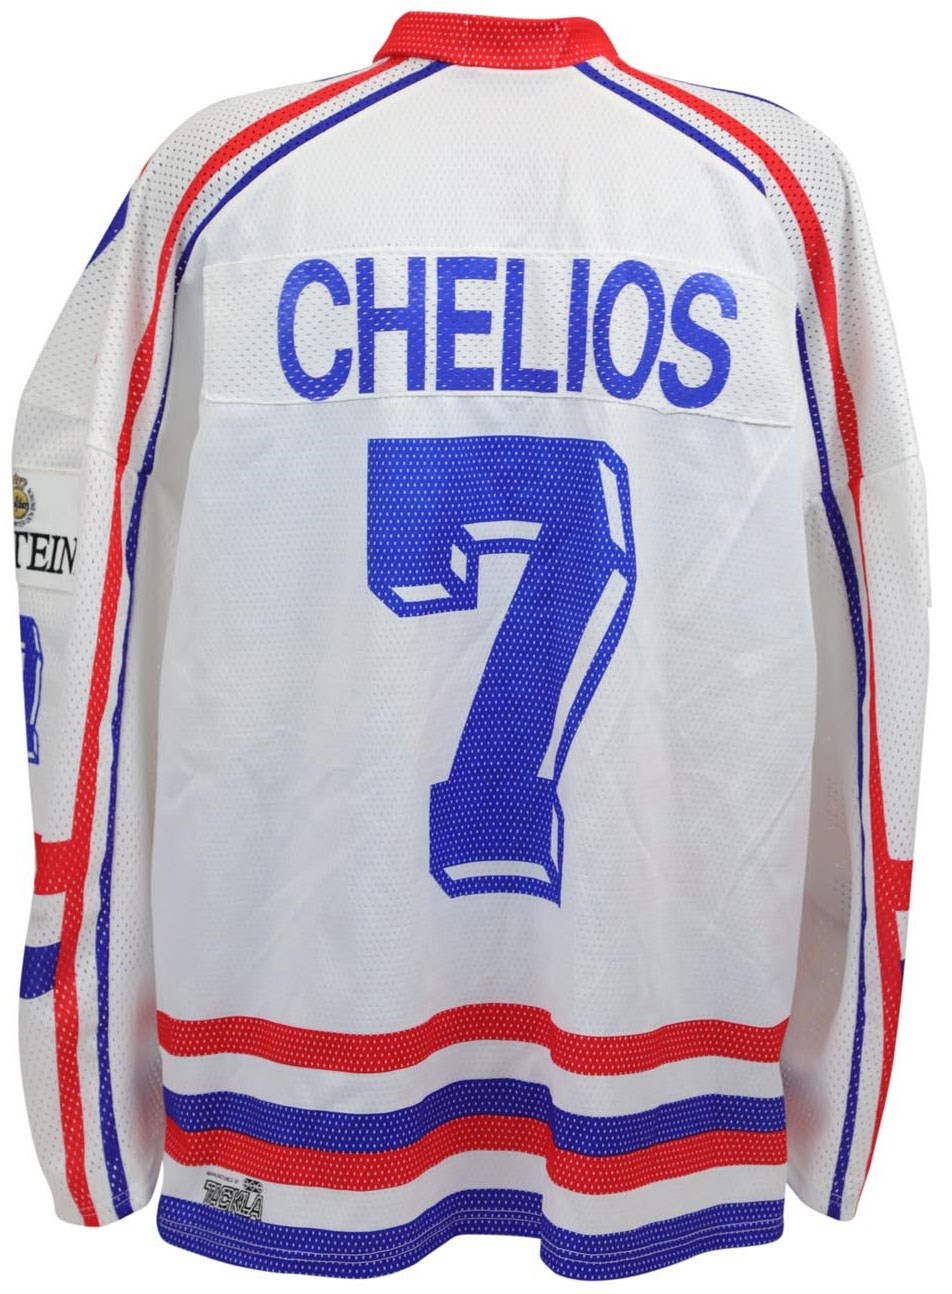 Hockey - 1994 Chris Chelios World Ice Hockey Championships Game Worn Jersey